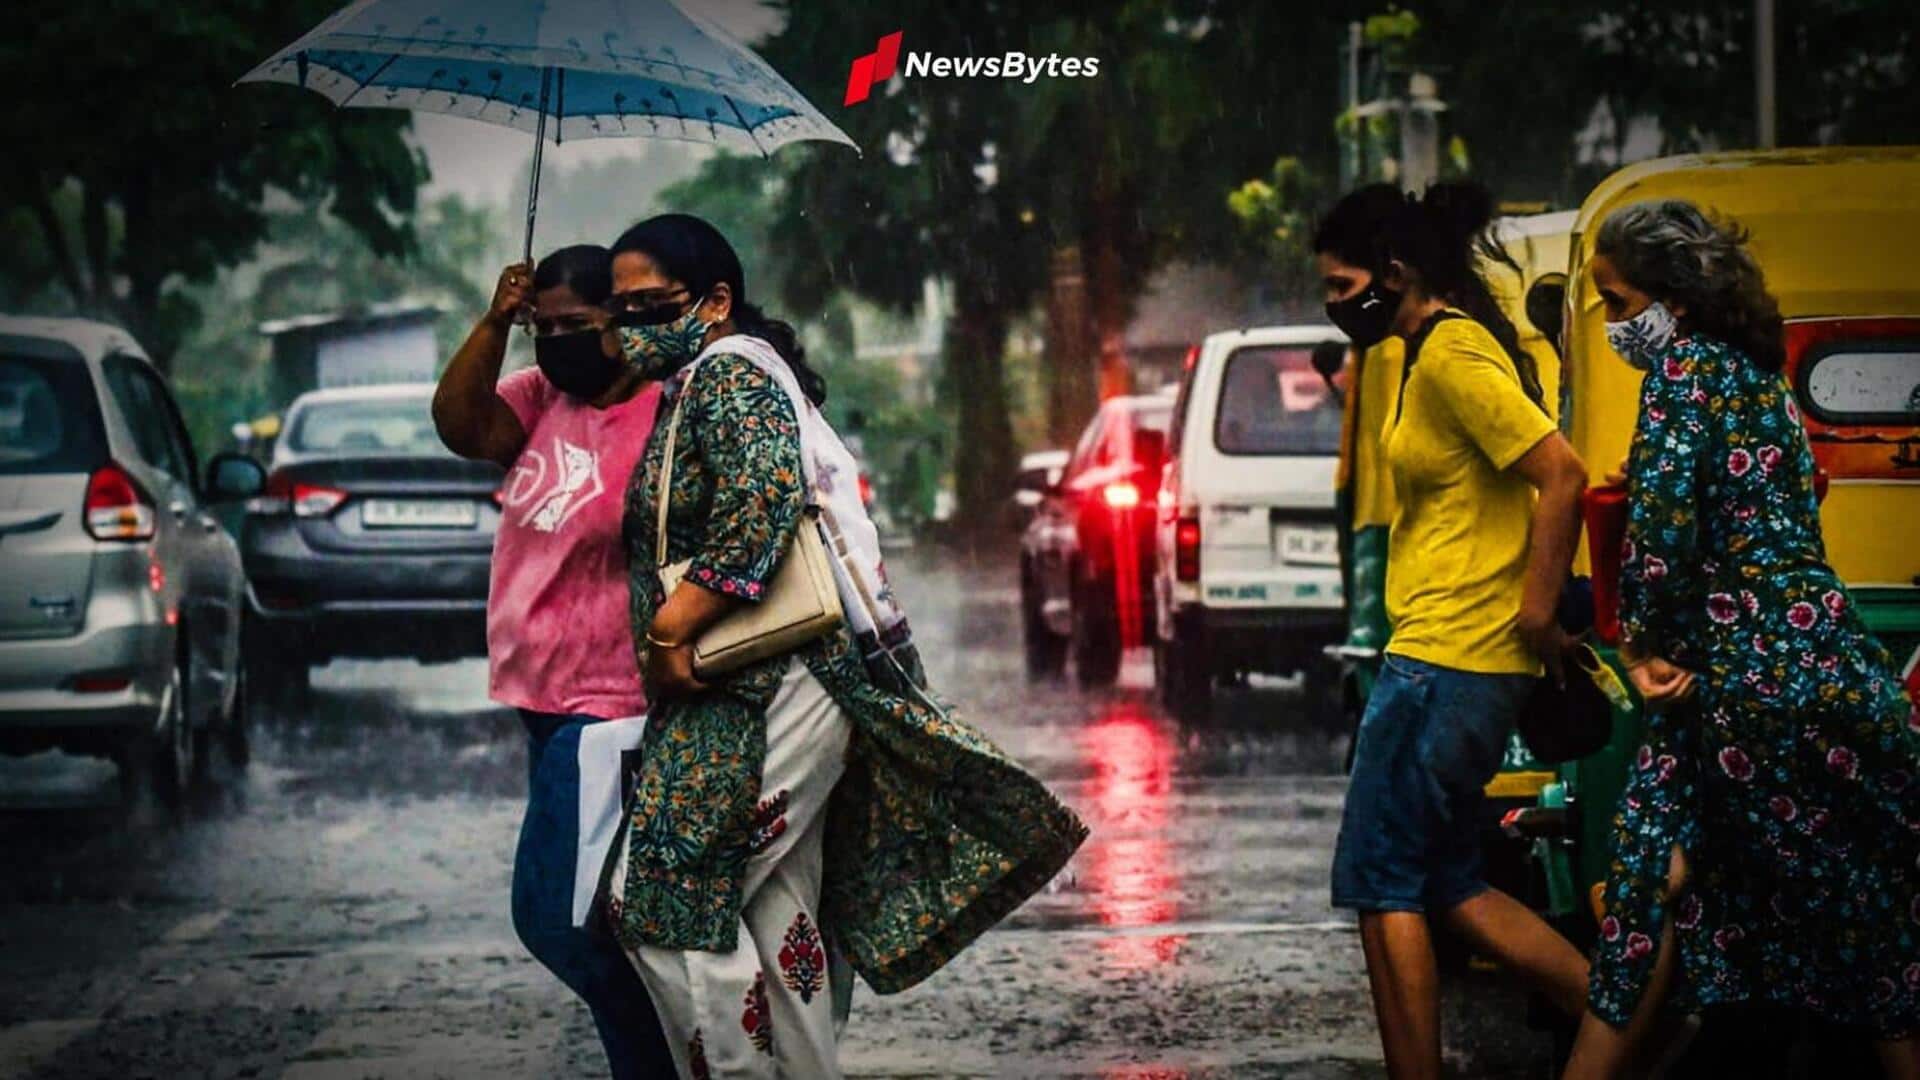 उत्तर प्रदेश, मध्य प्रदेश और महाराष्ट्र में 3 दिन बारिश के आसार, हिमाचल में राजमार्ग बंद